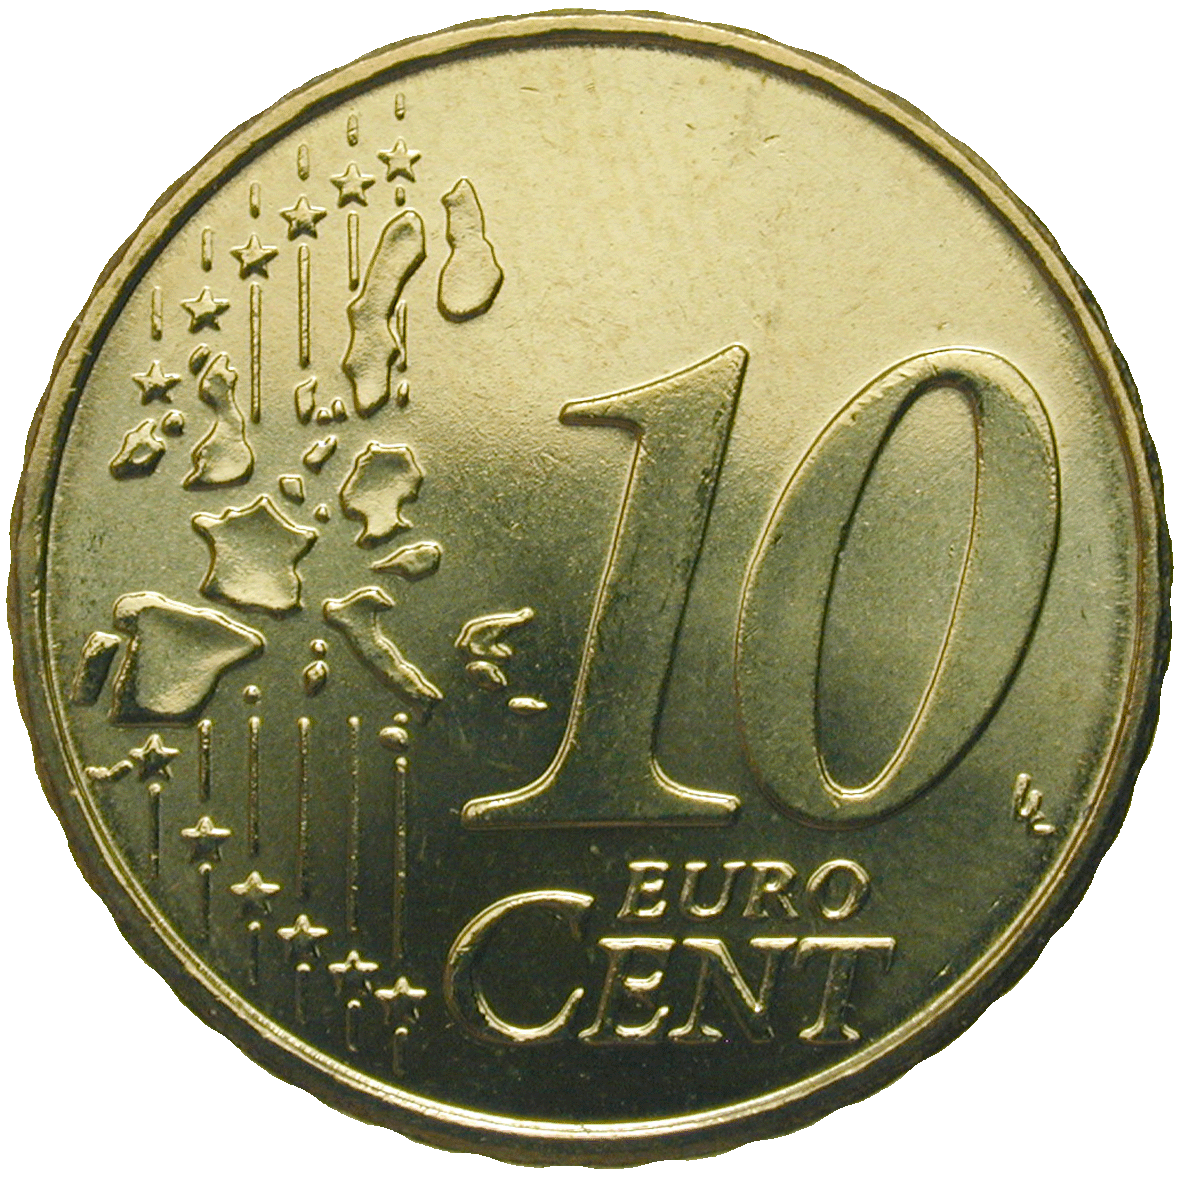 Republik Griechenland, 10 Eurocent 2002 (reverse)